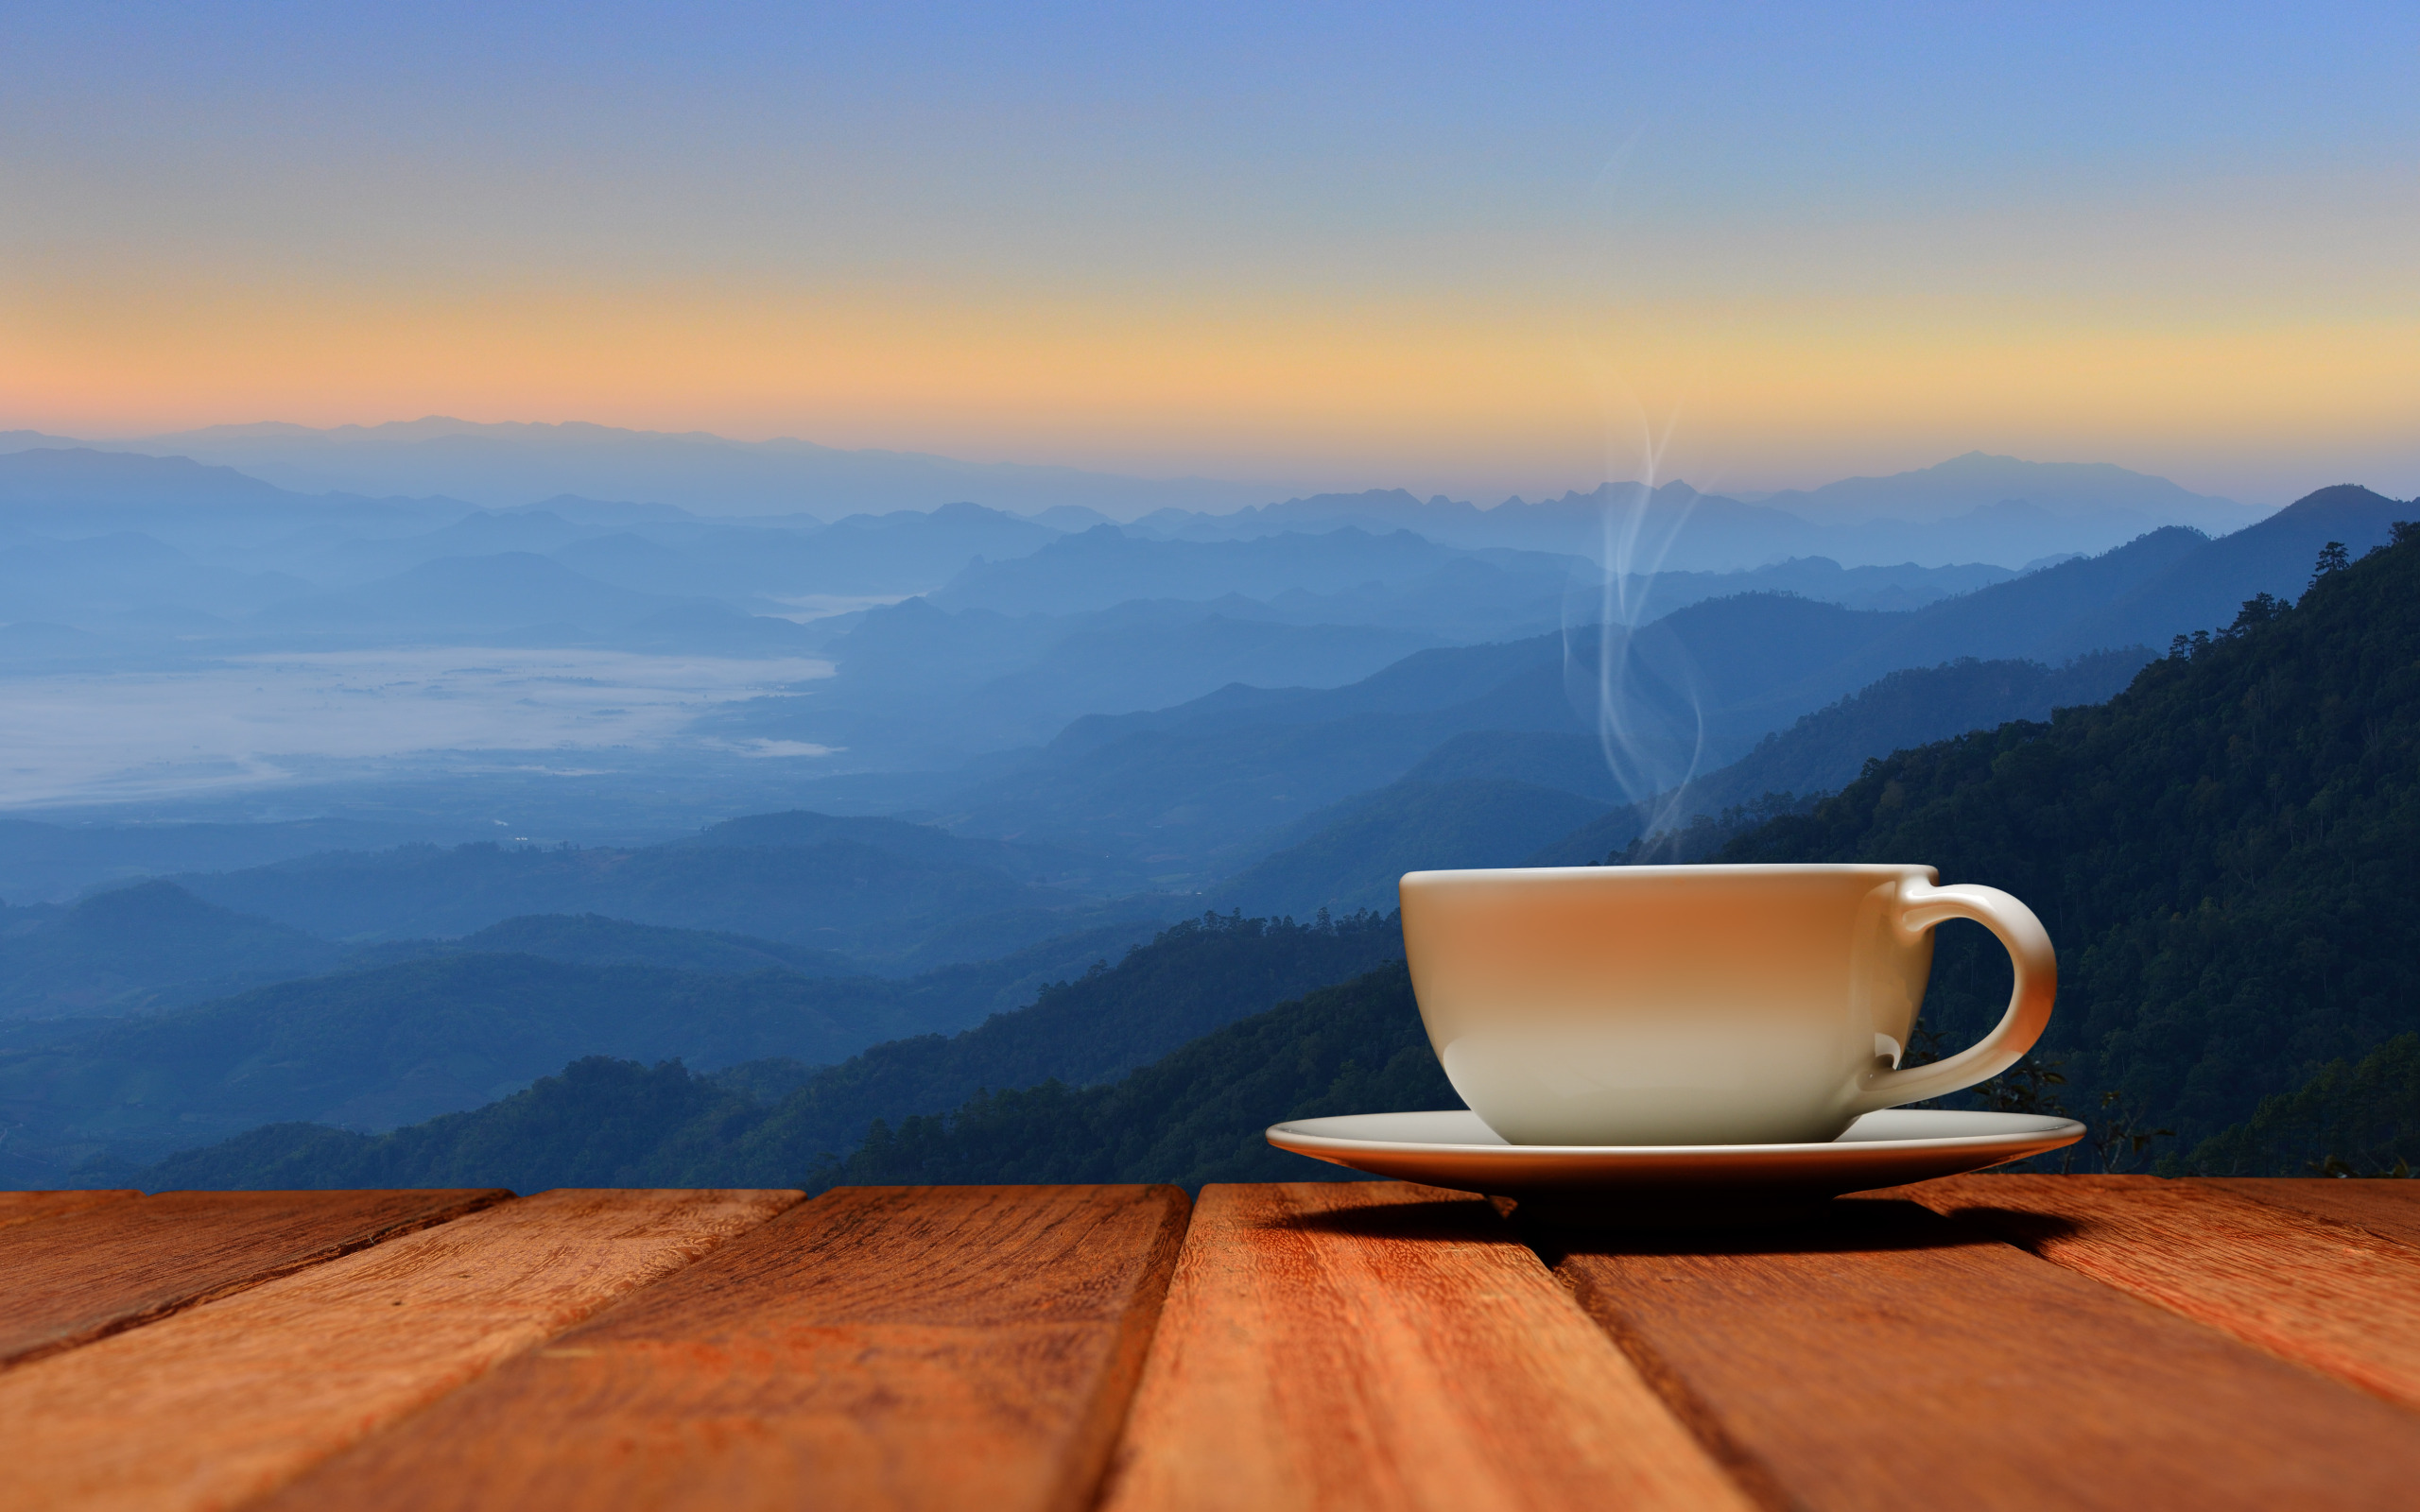 Morning. Чашка кофе на столе. Утро кофе. Утренние горы. Чай на природе.